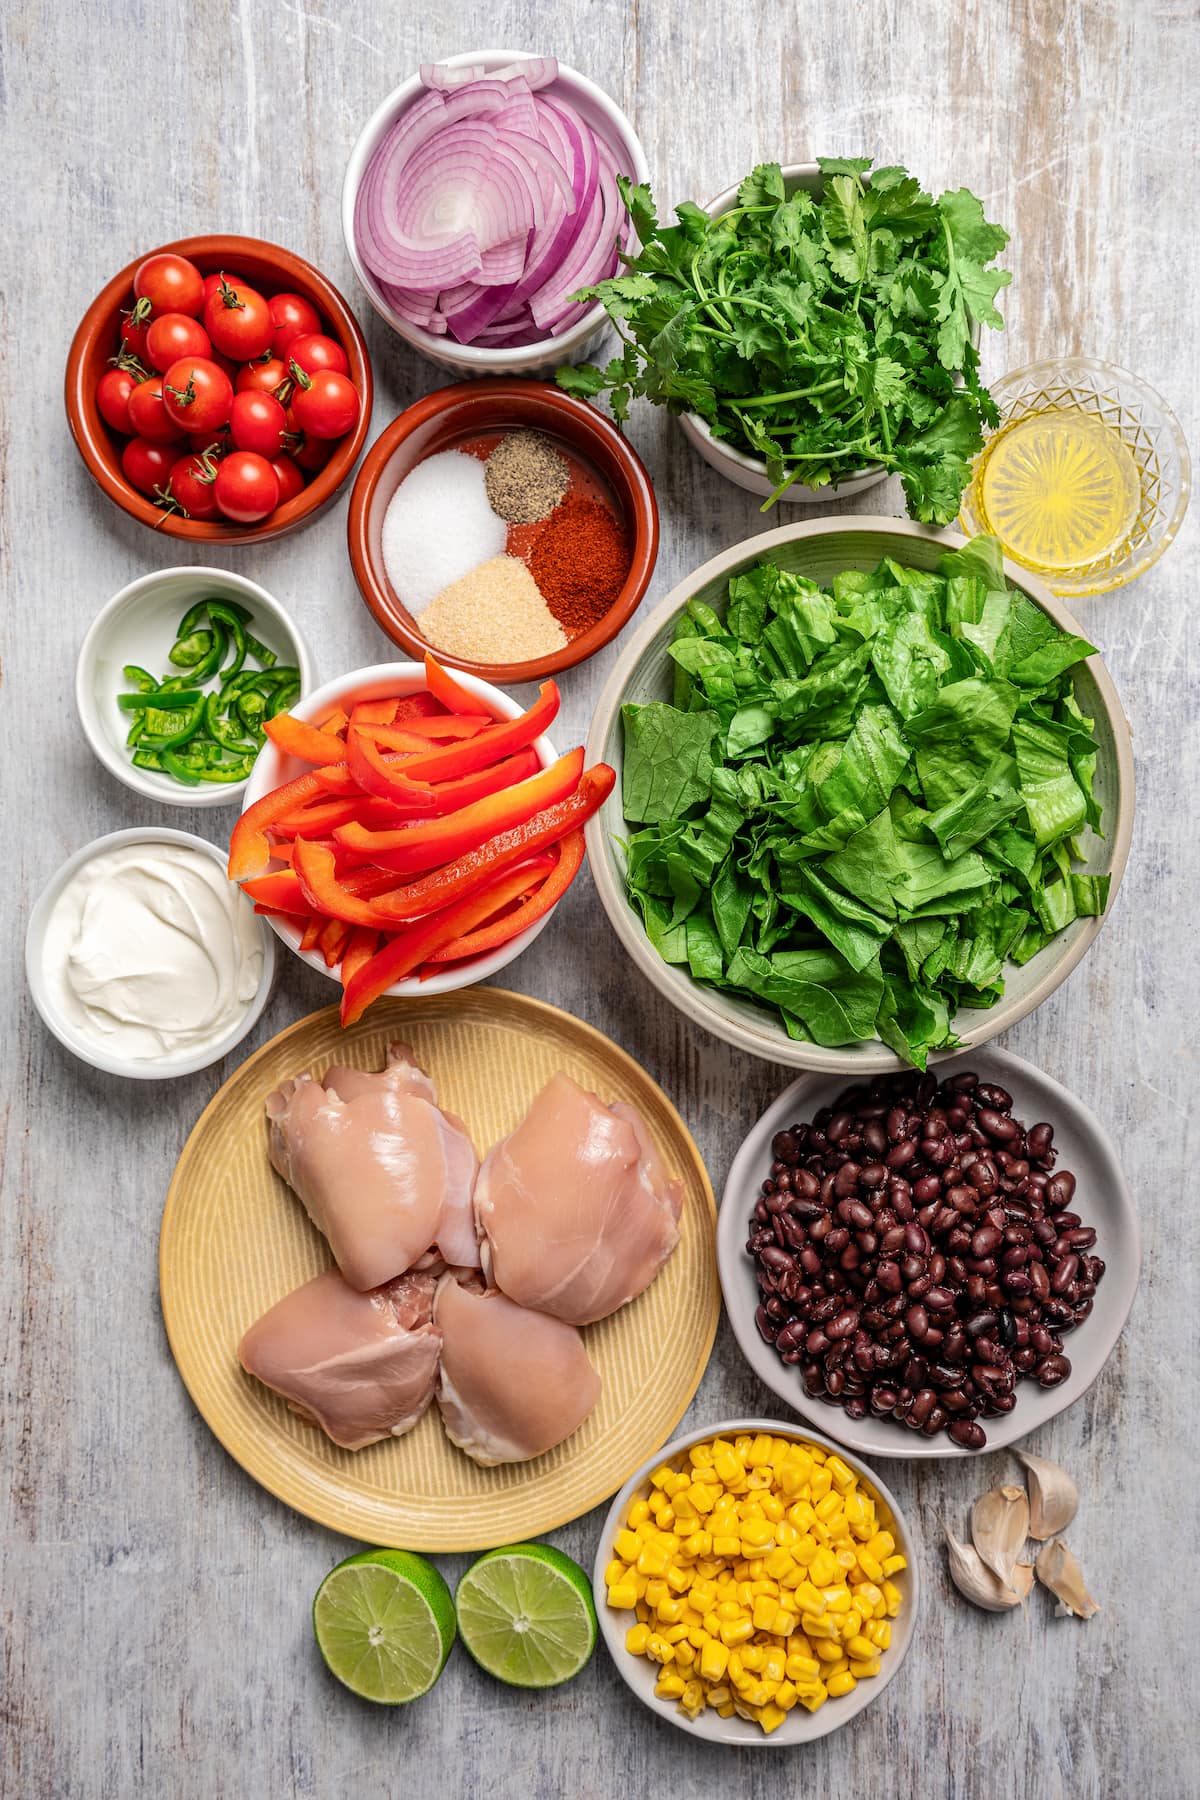 Ingredients for Southwestern chicken salad.